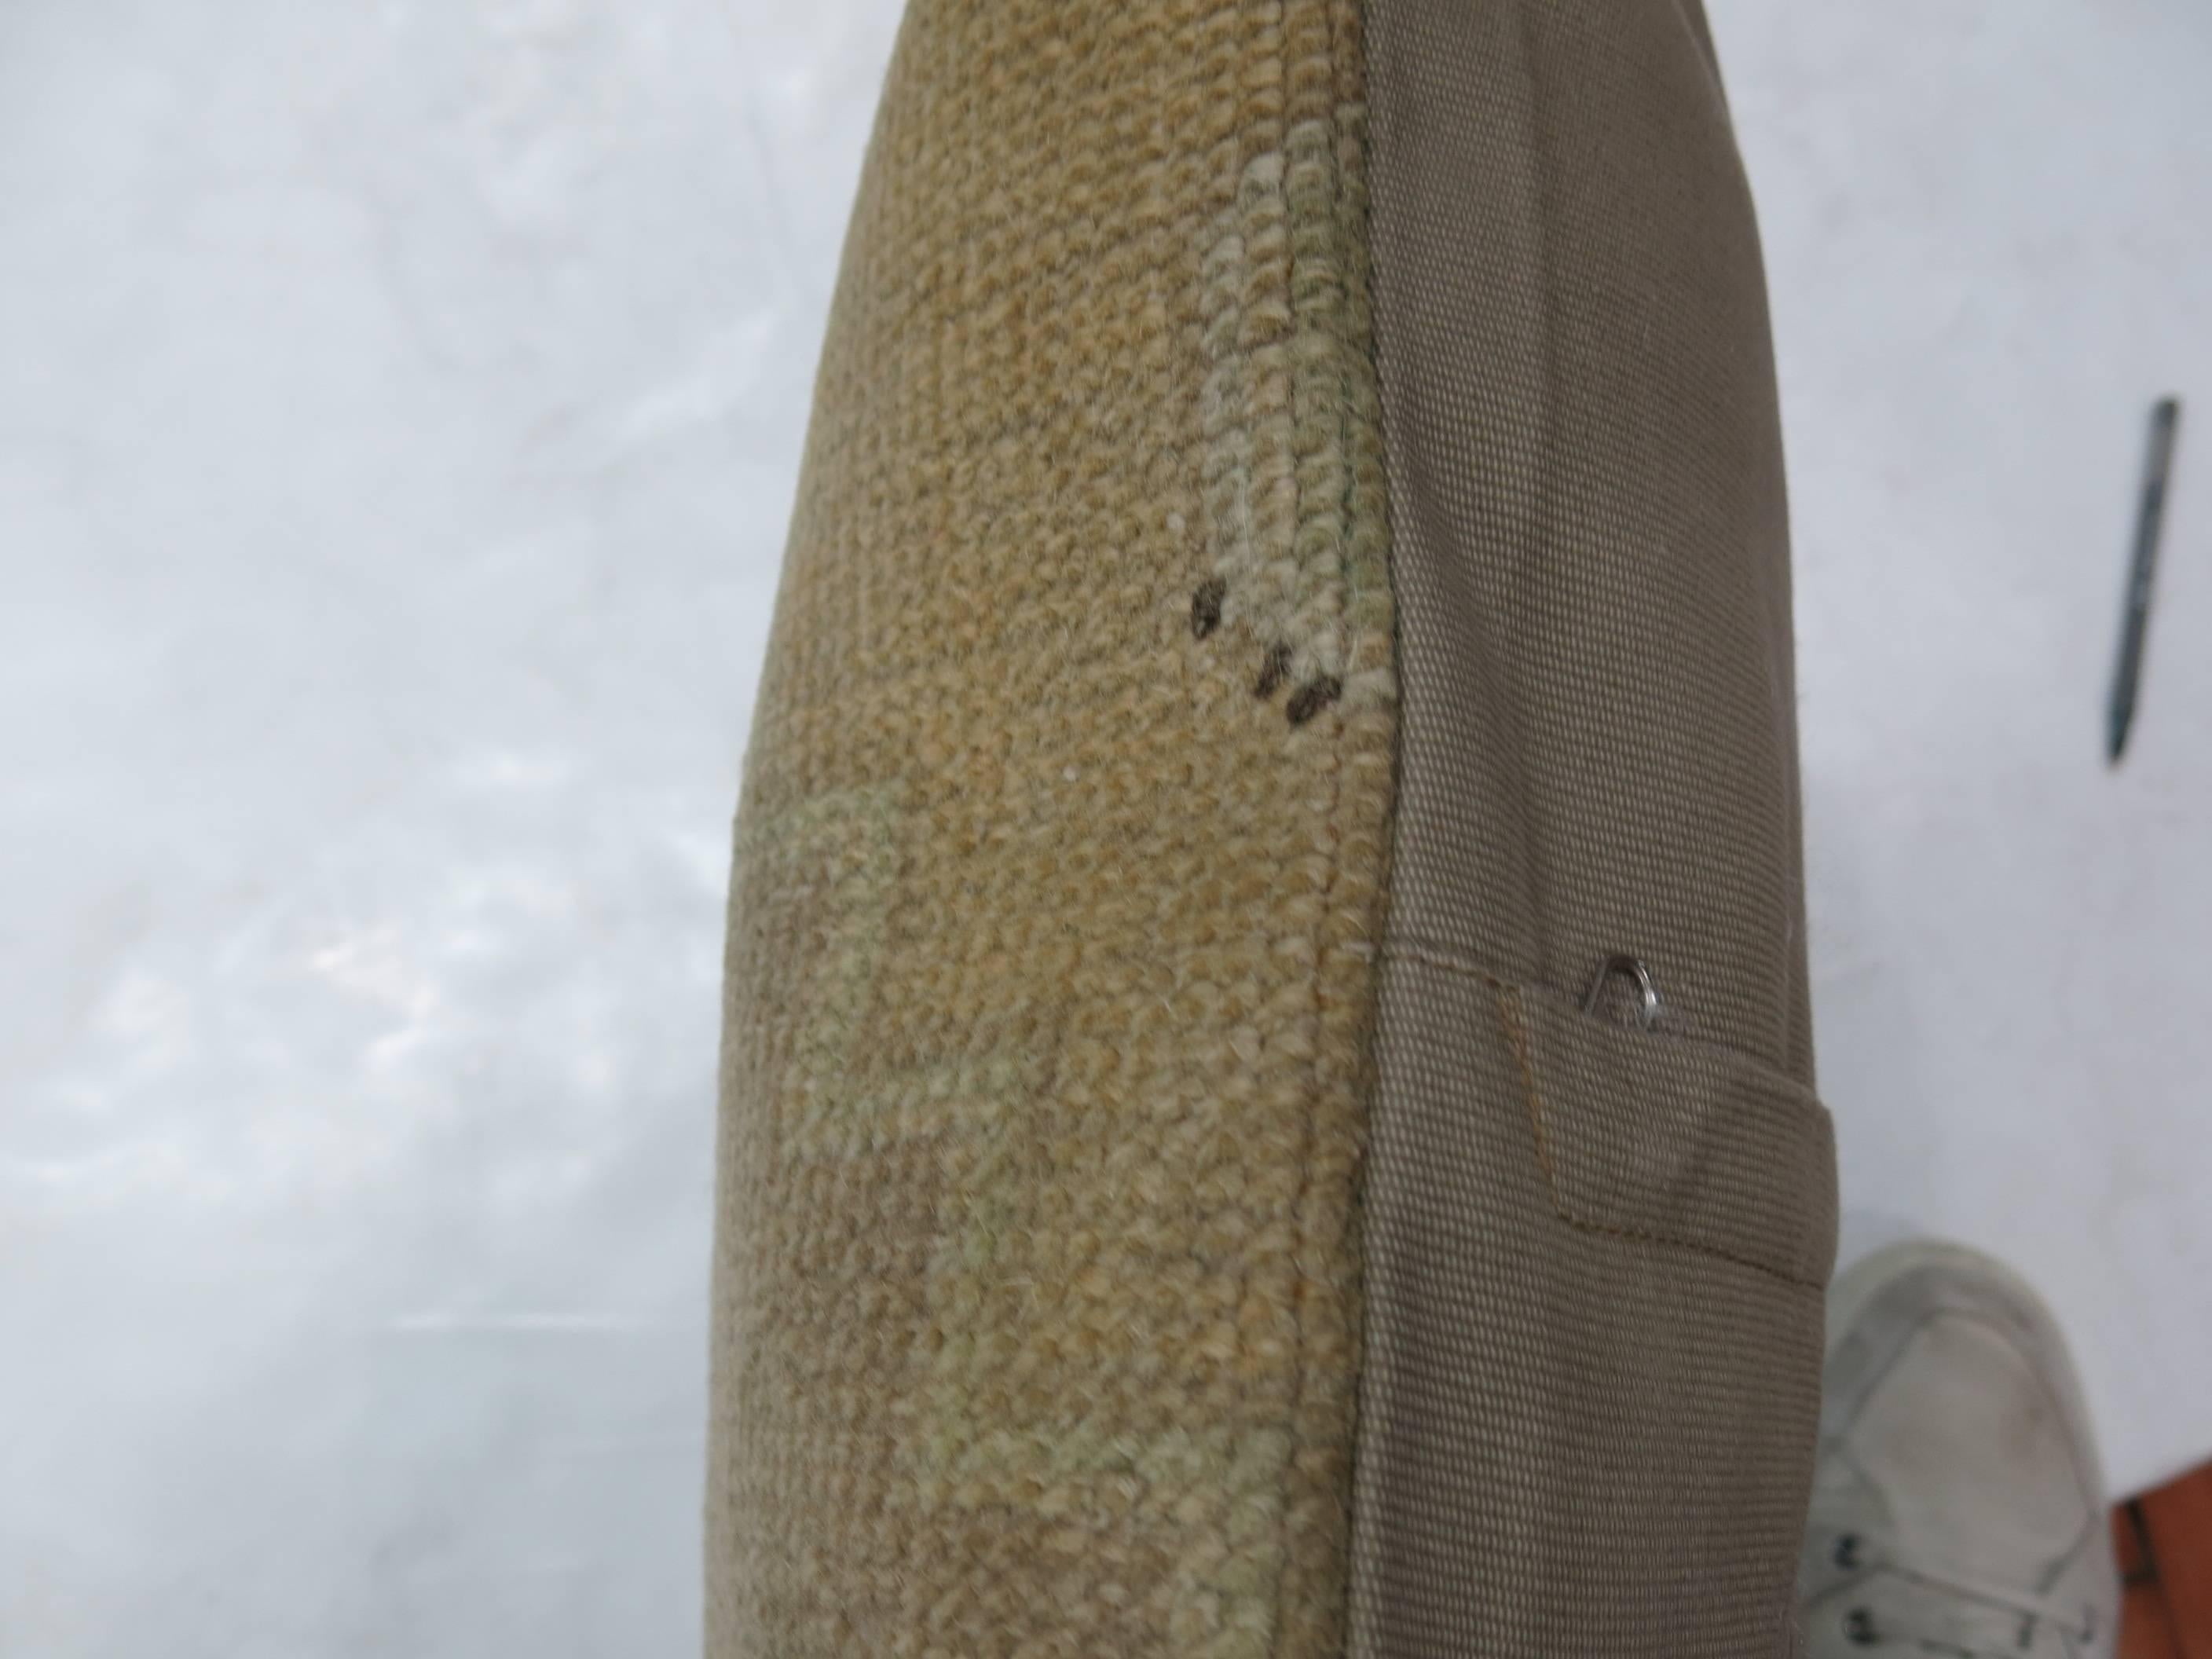 Oreiller fabriqué à partir d'un tapis Oushak vintage. Tan, médaillon vert clair, accents de contour marron.

18'' x 18''